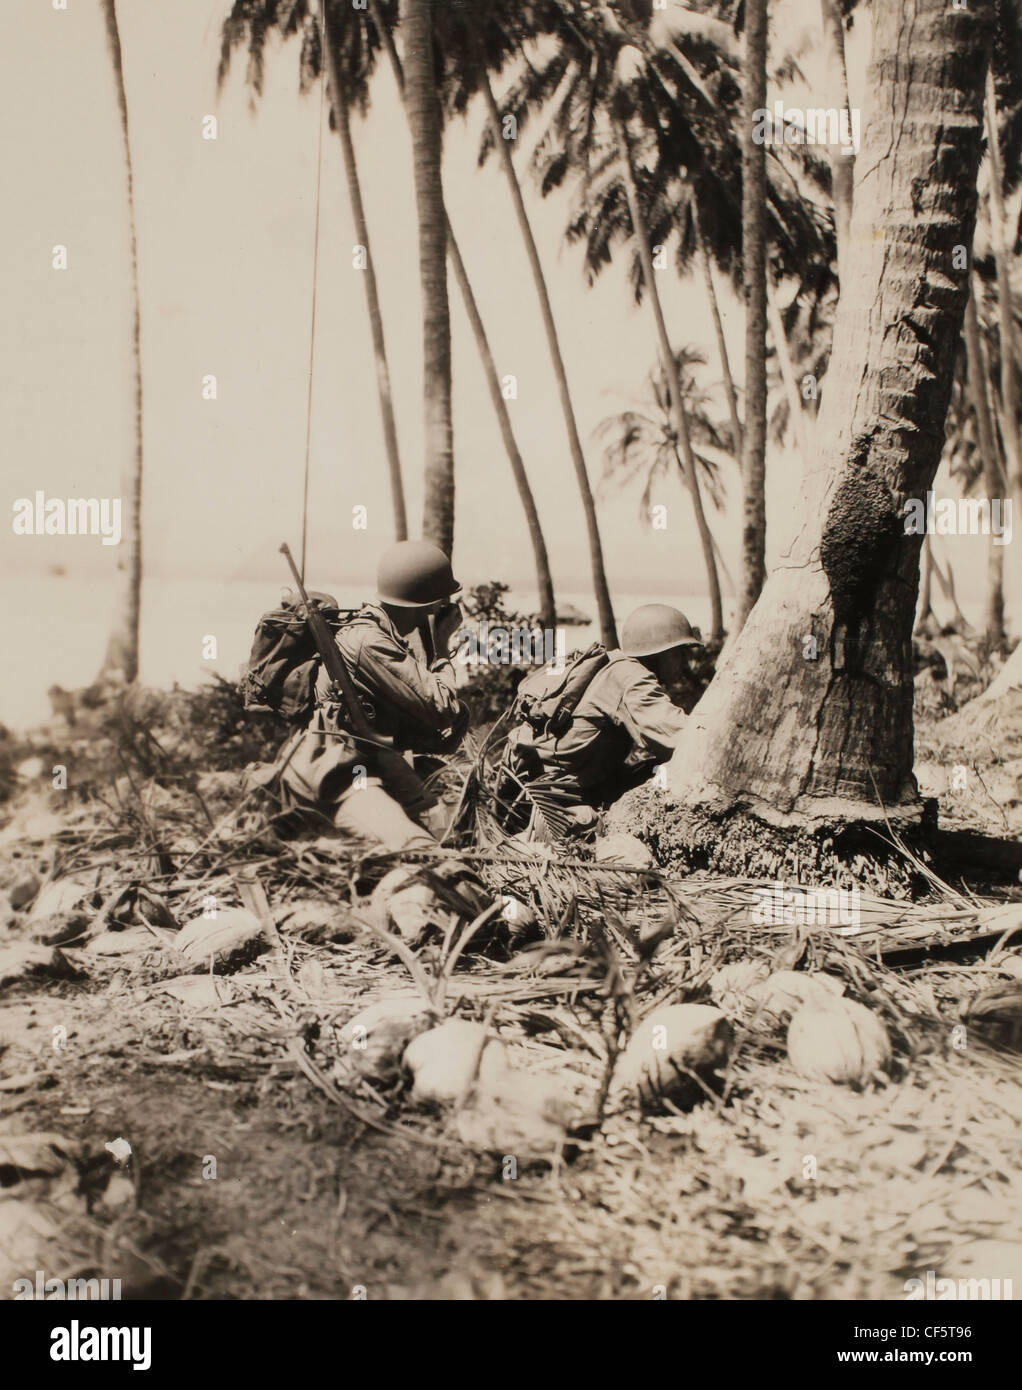 Marine Corps Maschine "Gunners" beobachten jede feindliche Tätigkeit 10. März 1944 Kampagne WWII Guadalcanal Pazifikinsel Stockfoto